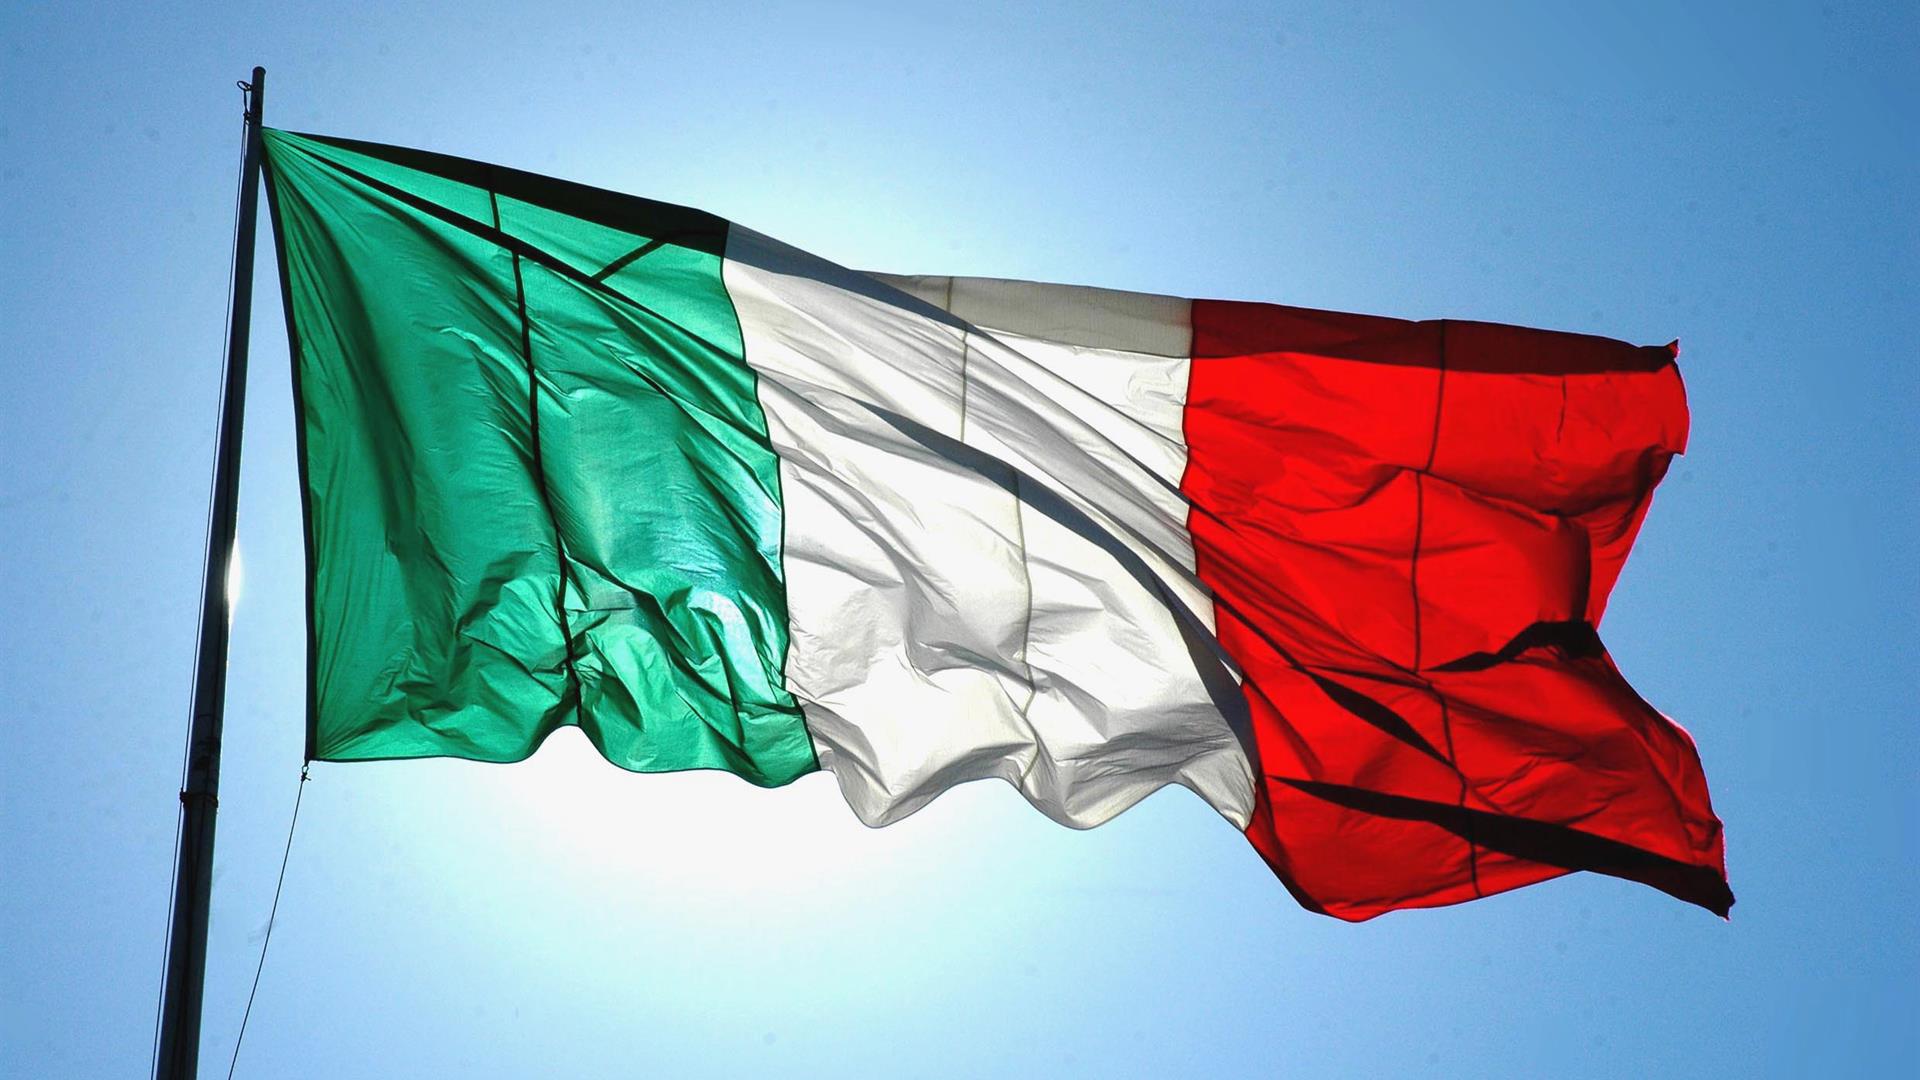 Bandiera Italia FOTO DI © SIMONE FENSORE:SINTESI 